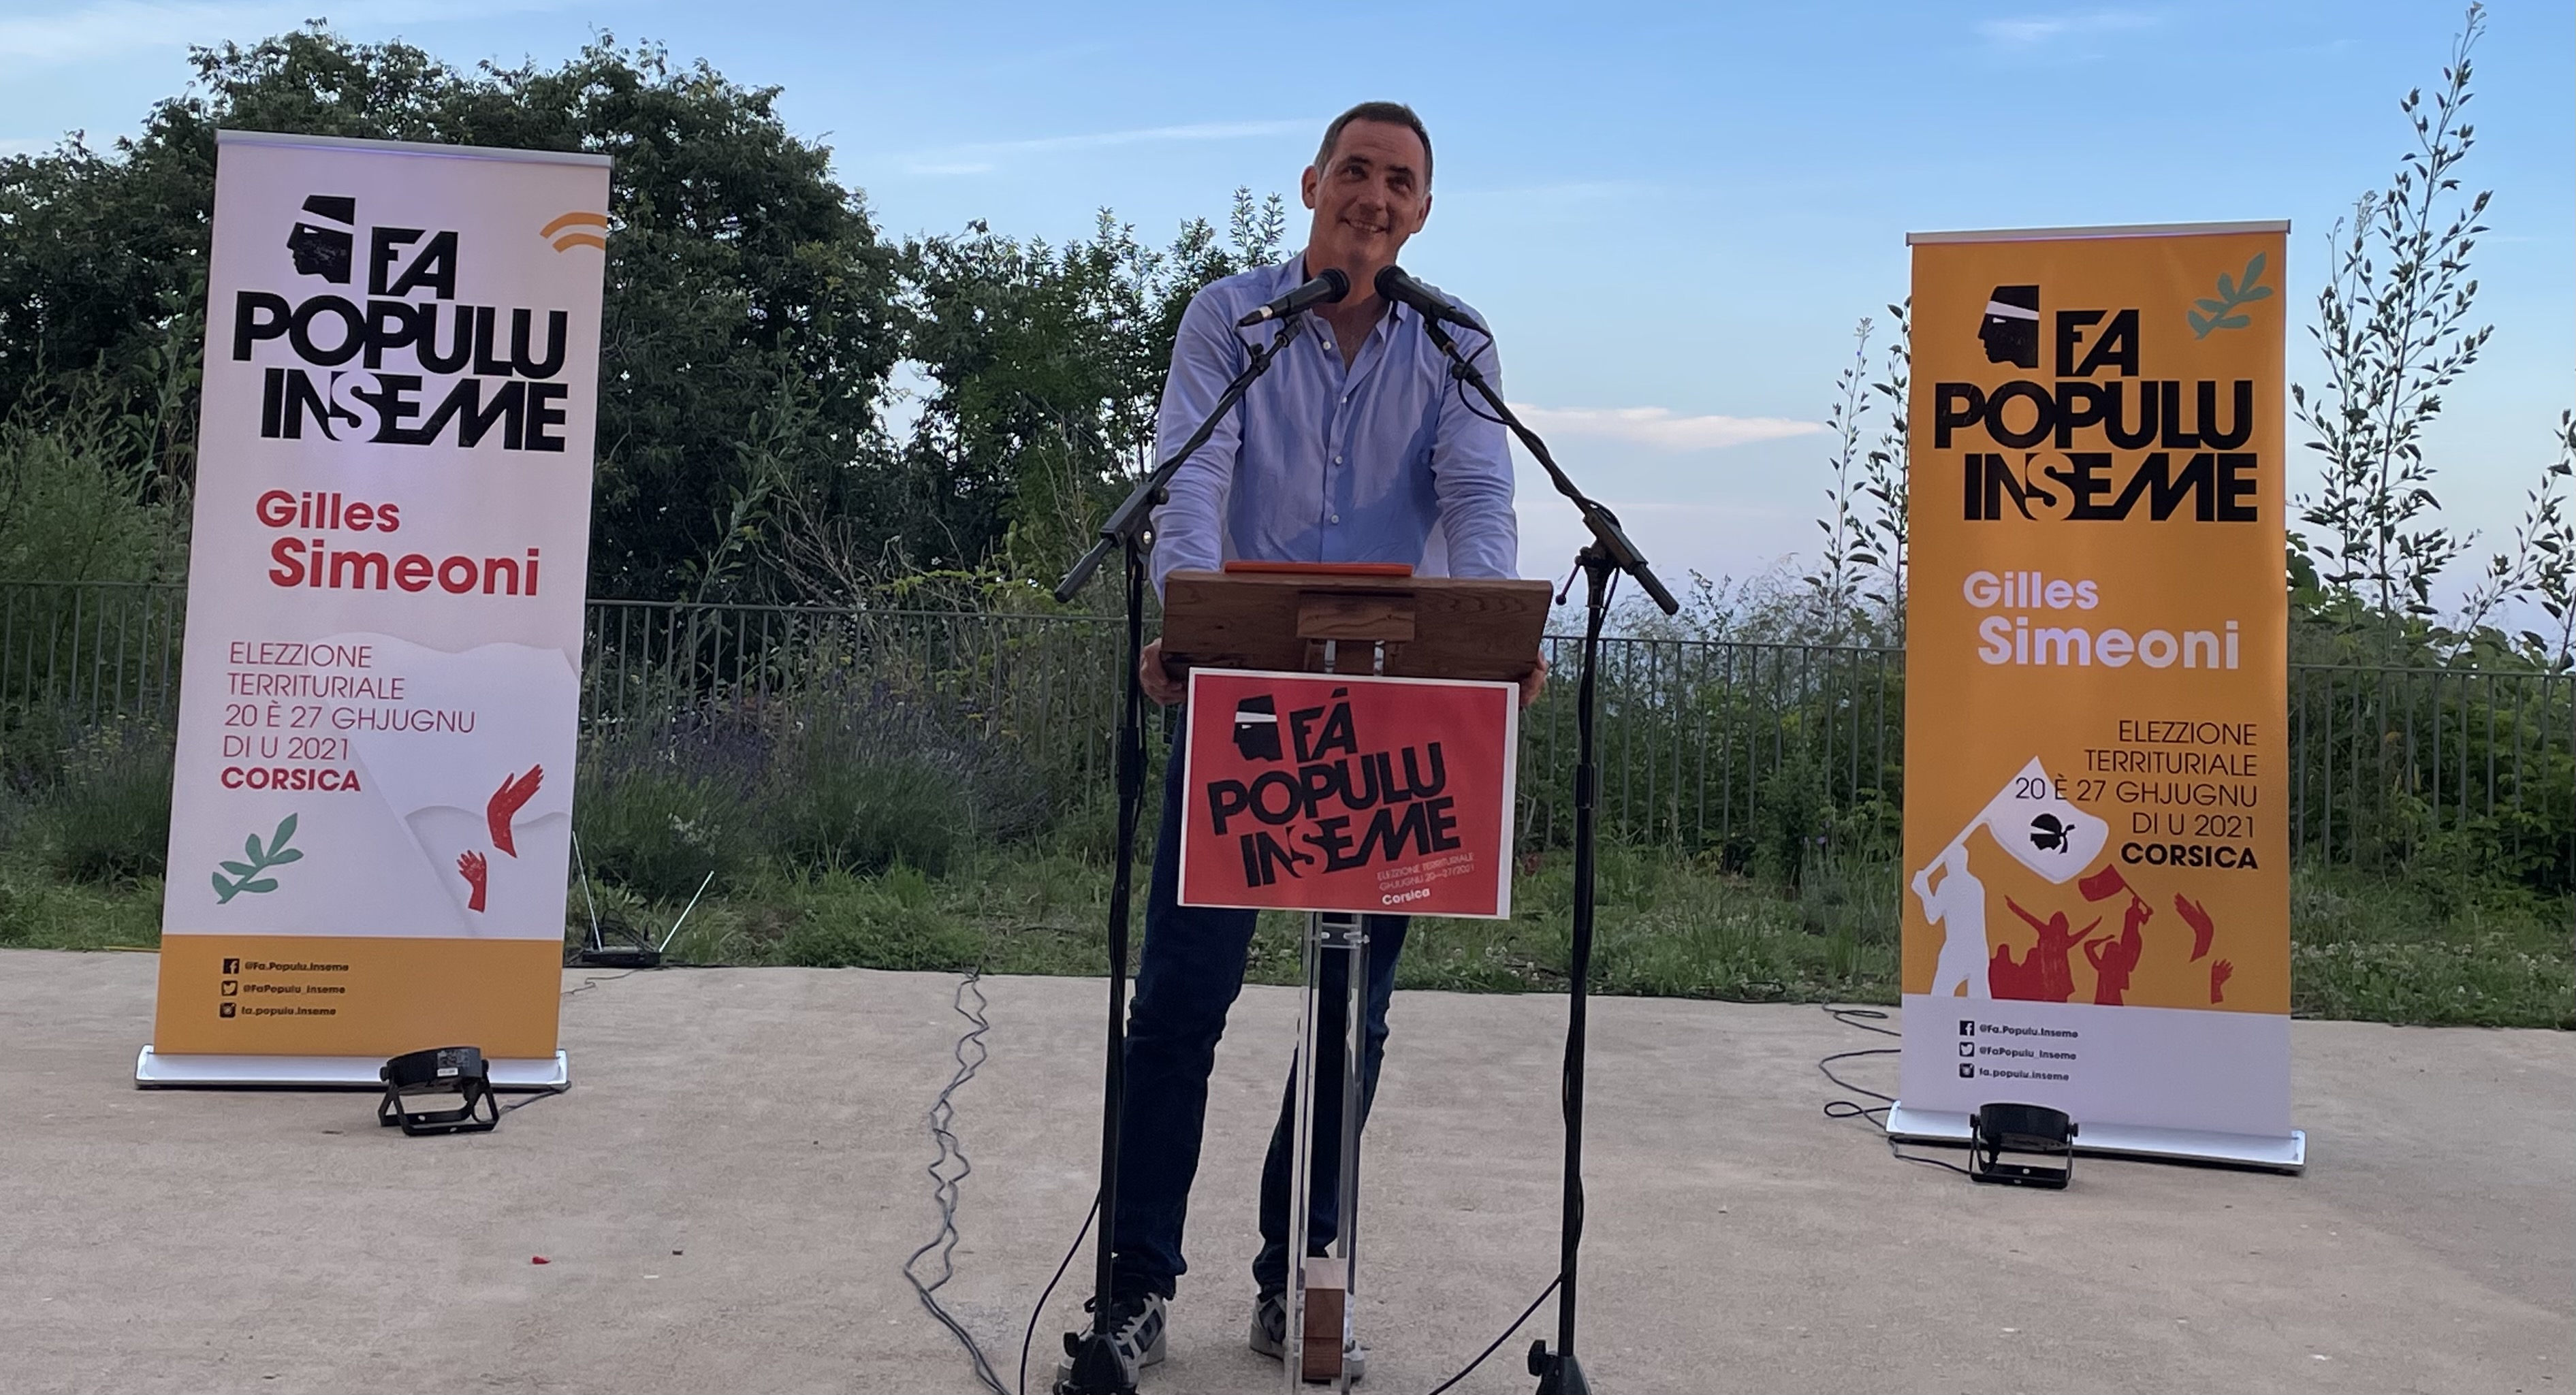 Gilles Simeoni, président du Conseil exécutif de la Collectivité de Corse, leader de Femu a Corsica, chef de file de la liste Fa populu Inseme pour les élections territoriales des 20 et 27 juin.